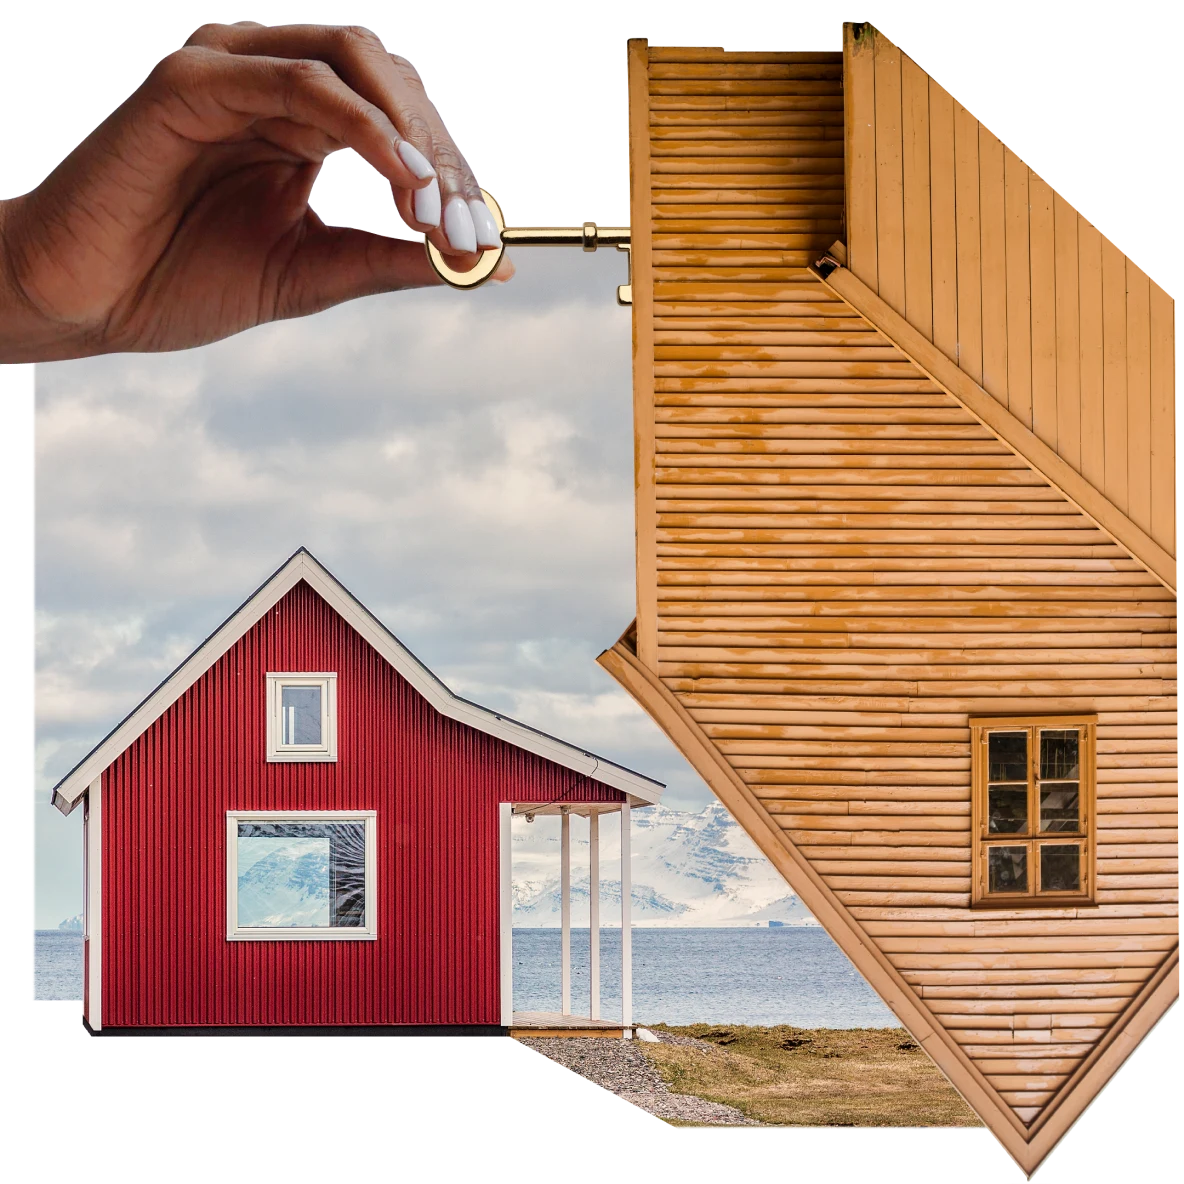 Eine Collage zum Thema Immobilien. Eine Schwarze Hand steckt einen Schlüssel in ein umgedrehtes Holzhaus. Im Hintergrund ein rotes, A-förmiges Haus mit einer Terrasse neben einem See, in der Ferne schneebedeckte Berge und ein blauer Himmel. 